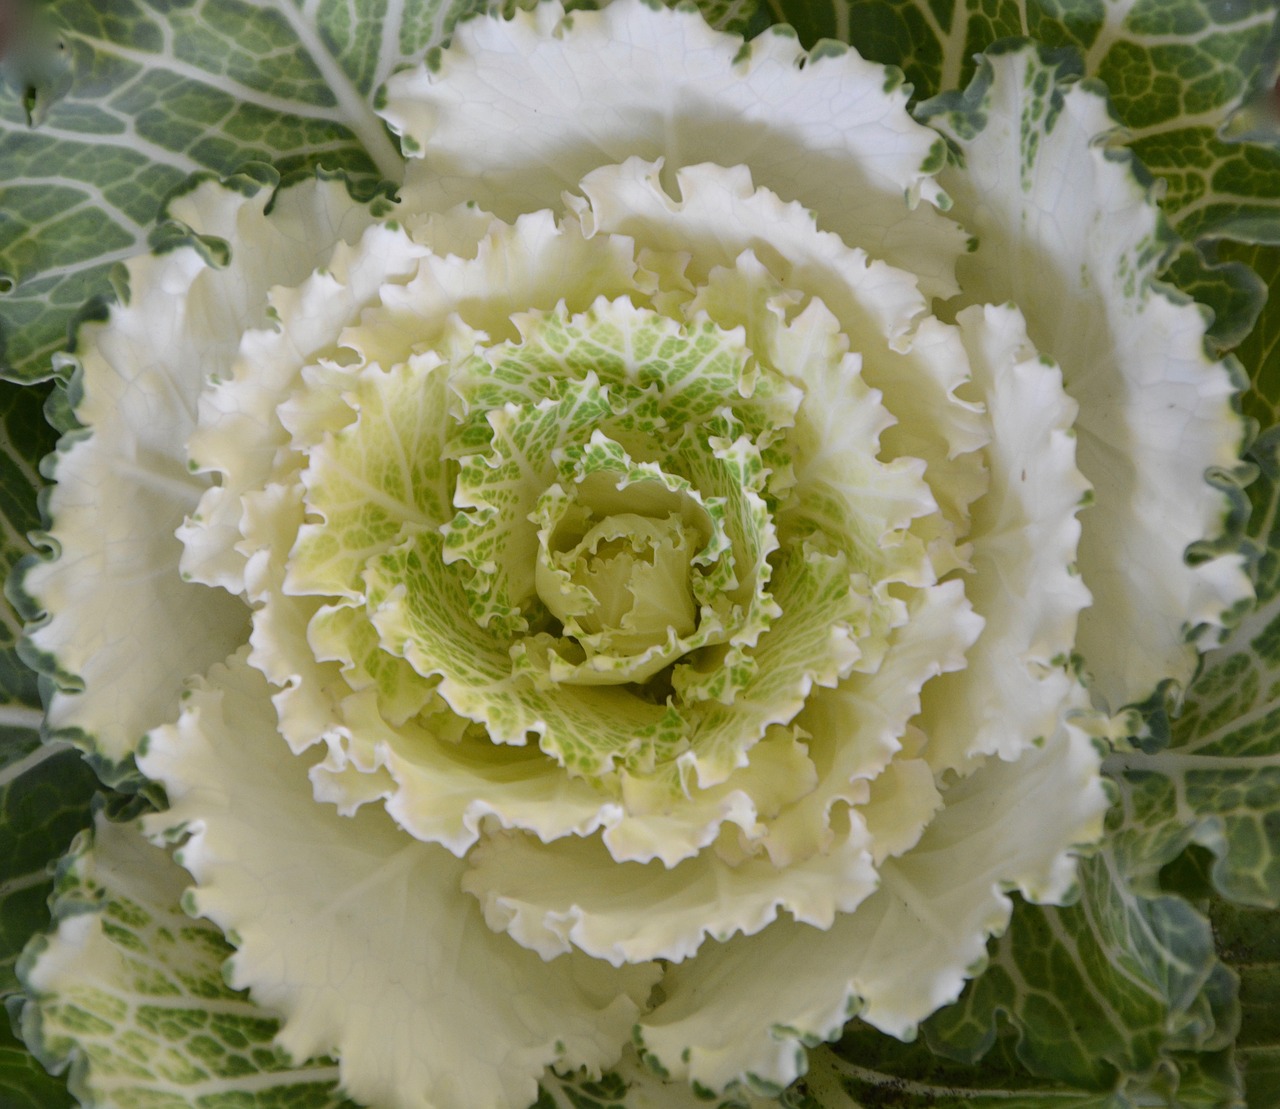 cabbage ornament decorative nature free photo